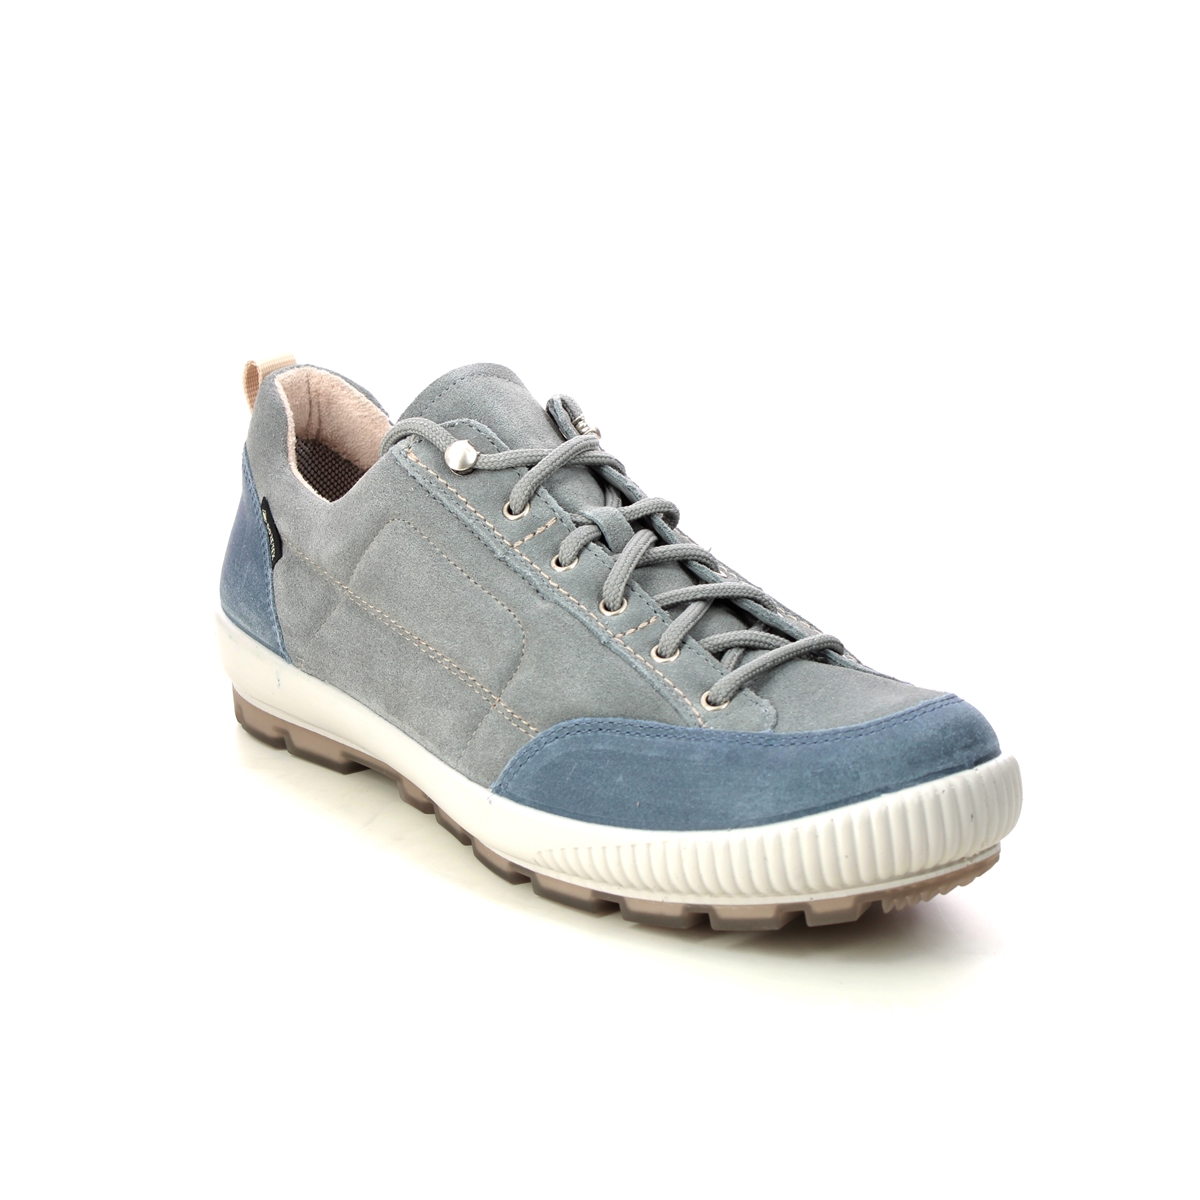 Legero Tanaro Trek Gtx Blue Grey Womens Walking Shoes 2000210-2410 In Size 6 In Plain Blue Grey